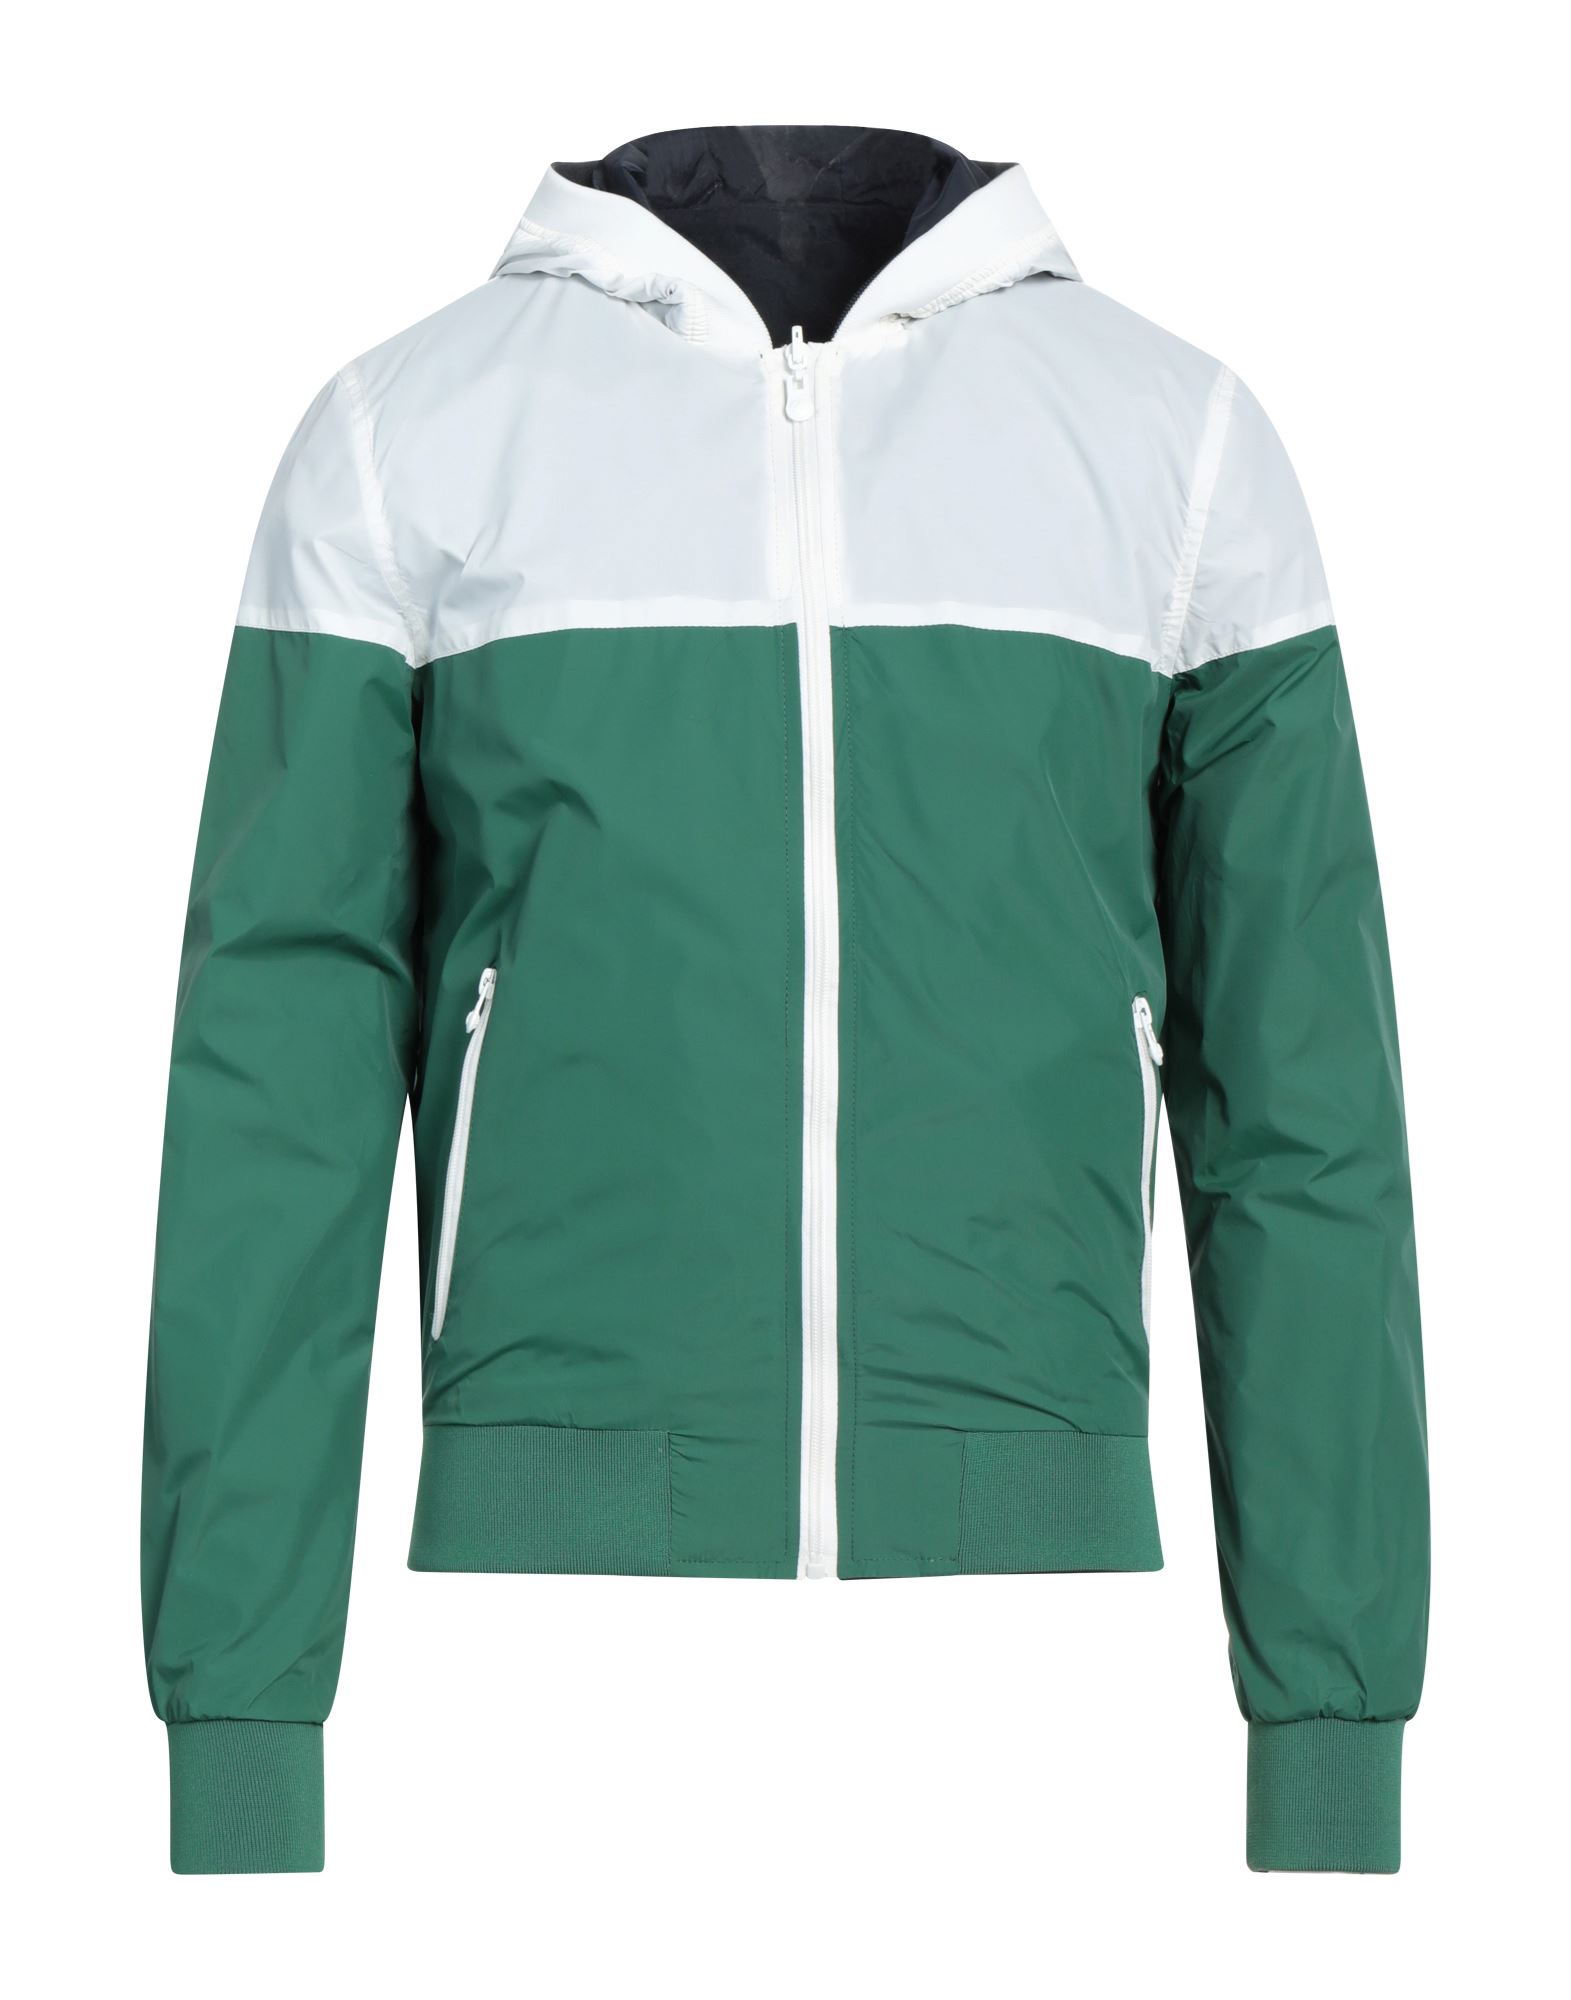 Shop Homeward Clothes Man Jacket Green Size Xl Nylon